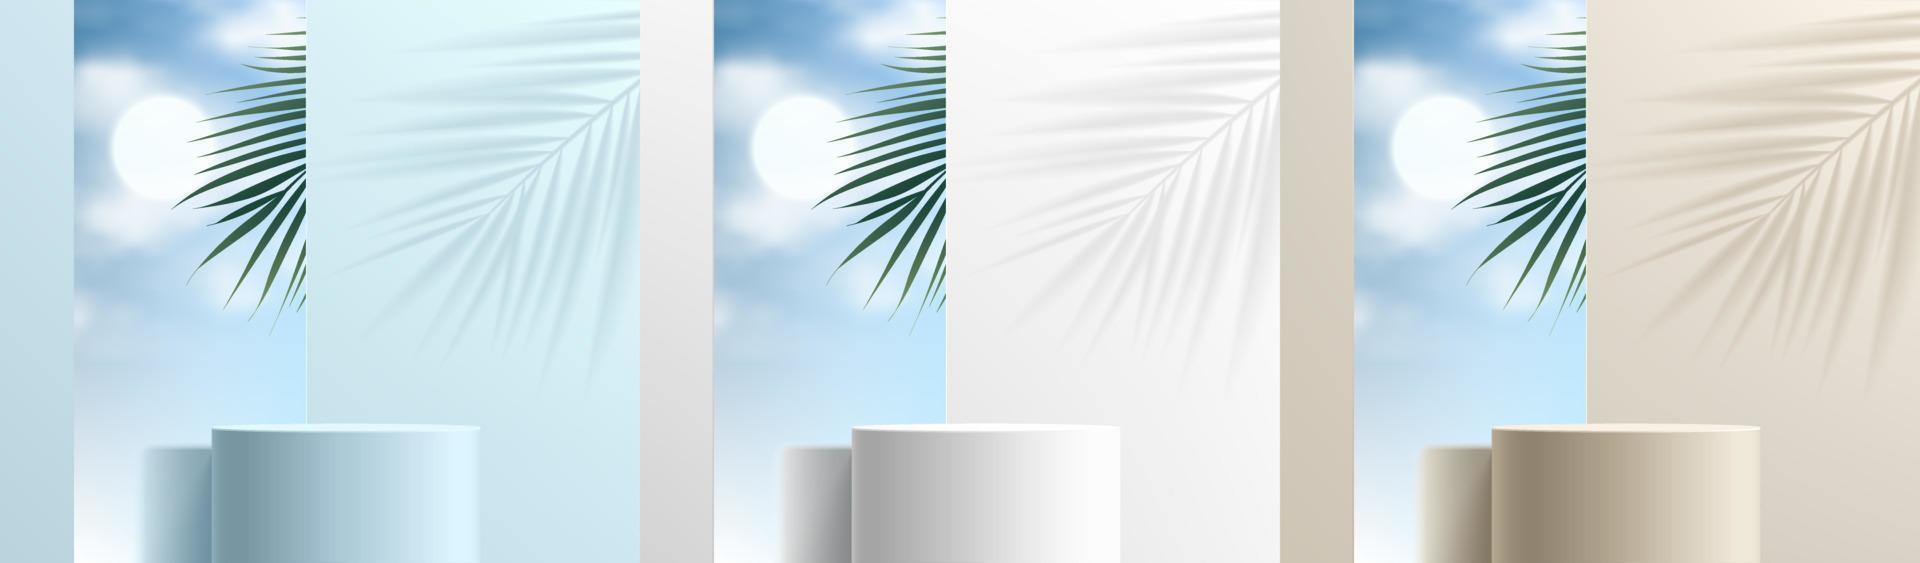 set di podio cilindrico 3d realistico blu, bianco e beige con cielo blu in occhiali a specchio, sfondo ombra foglia di palma. forme geometriche vettoriali. visualizzazione di prodotti di scena minima astratta. vetrina scenica. vettore